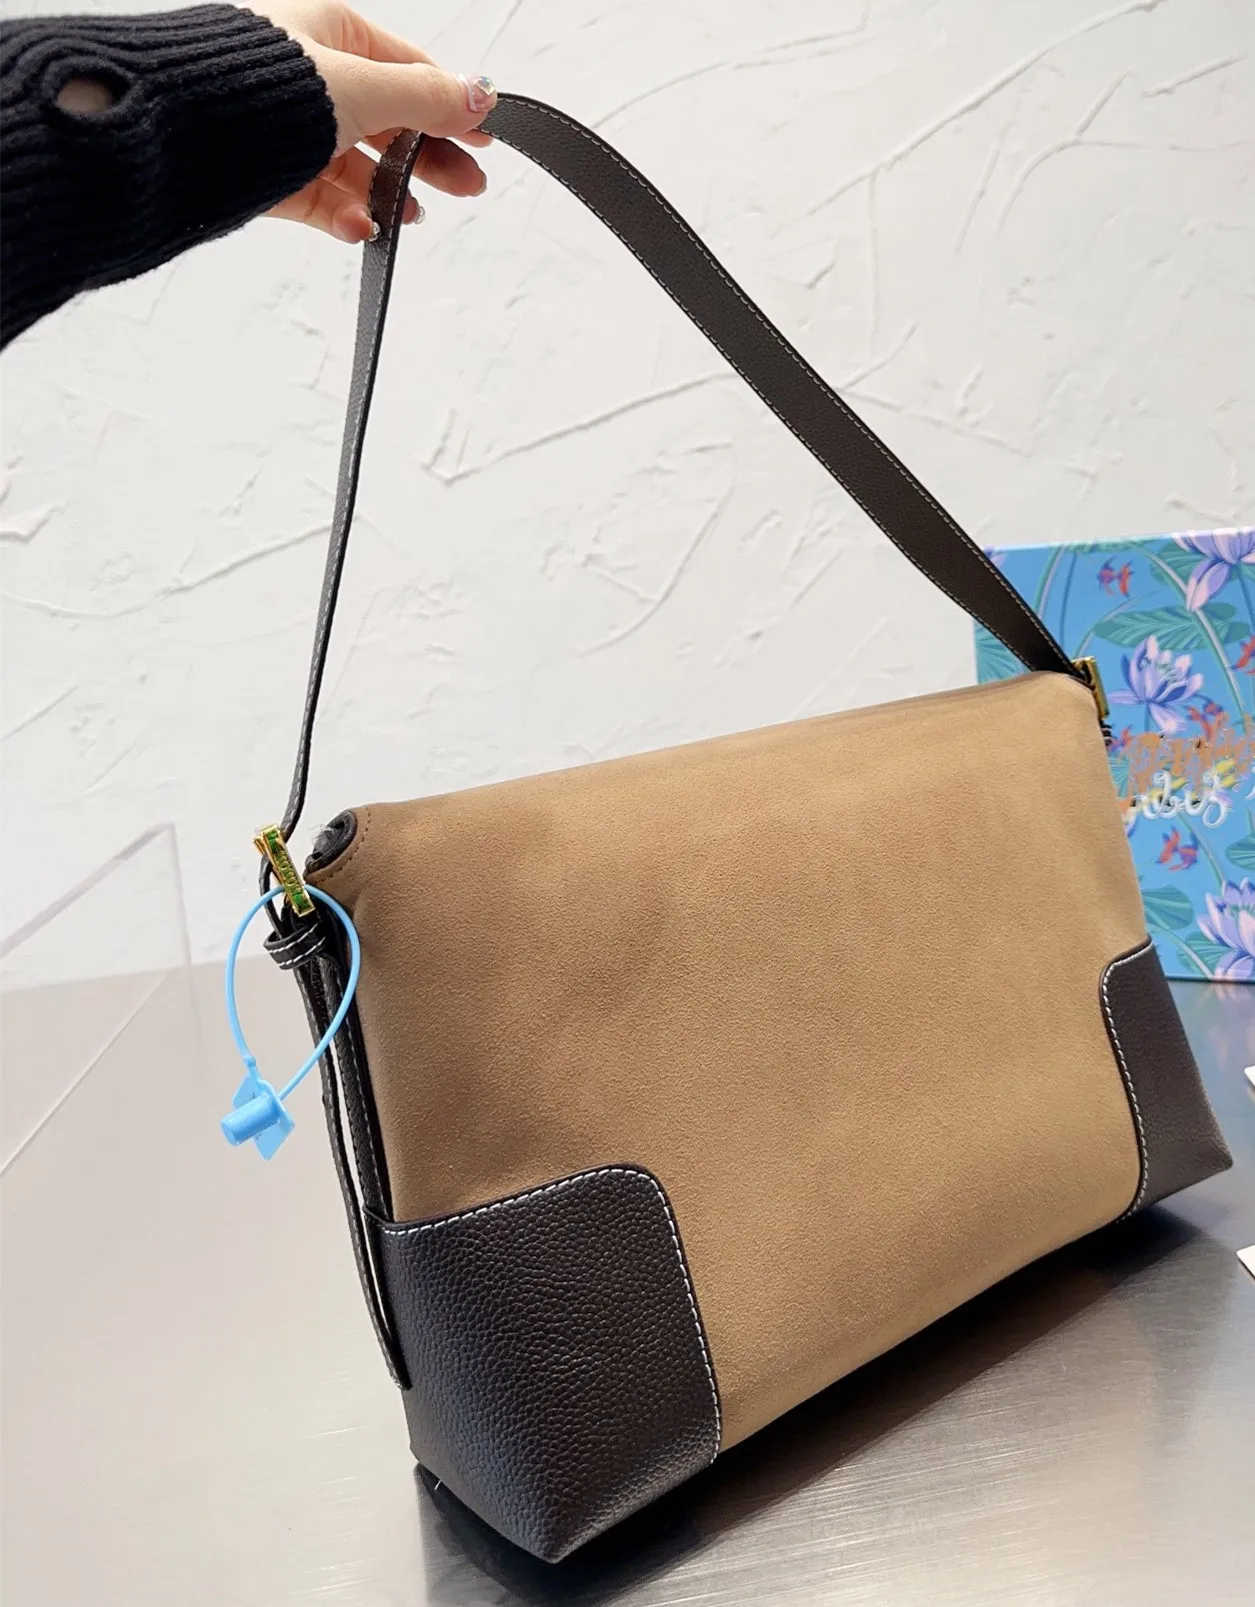 New fashion lunch box, dumpling bag, jacquard canvas splicing, portable armpit bag, shoulder bag, women's bag, versatile